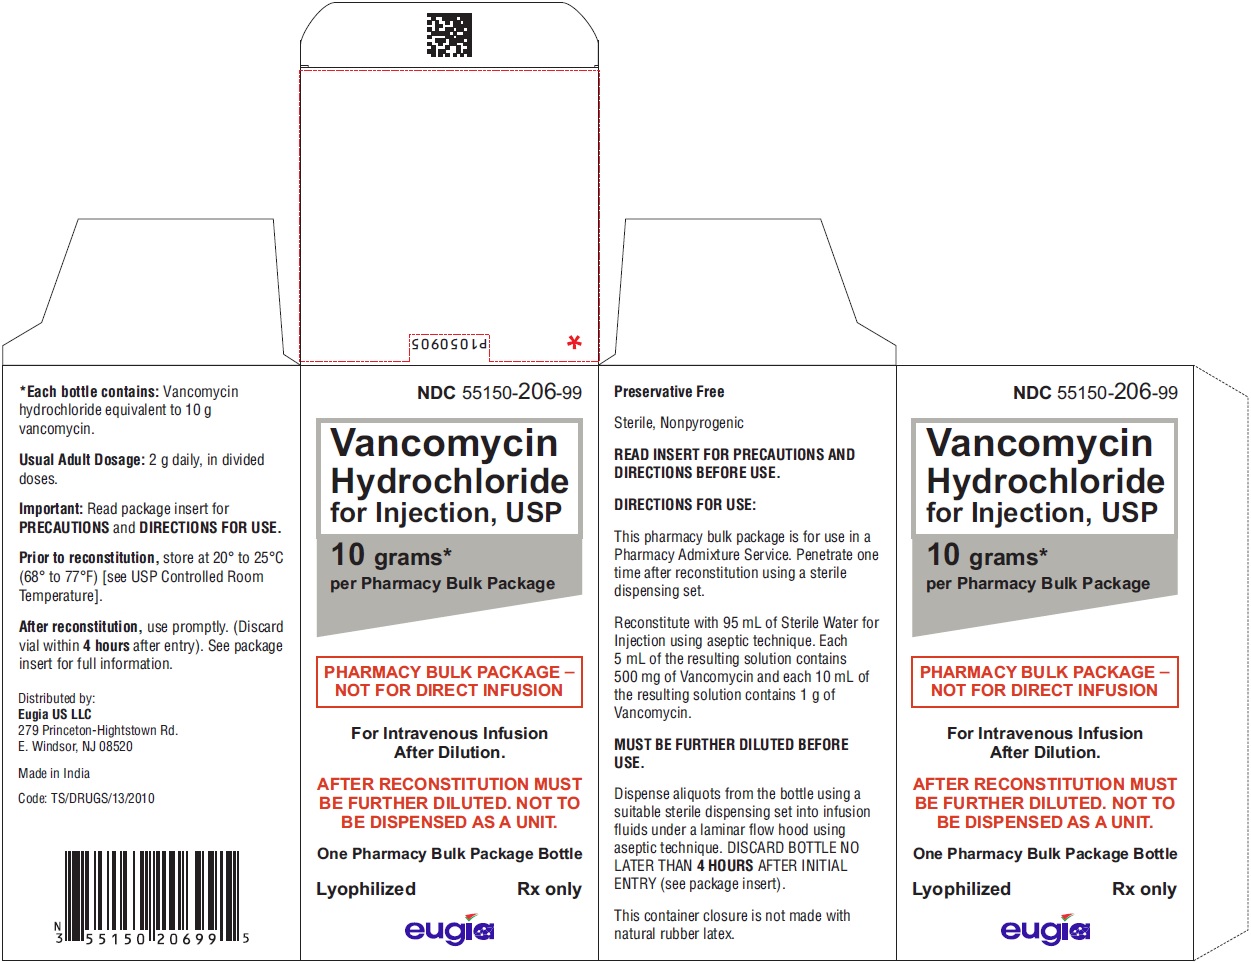 PACKAGE LABEL-PRINCIPAL DISPLAY PANEL - 10 grams per Pharmacy Bulk Package - Carton (1 Vial)